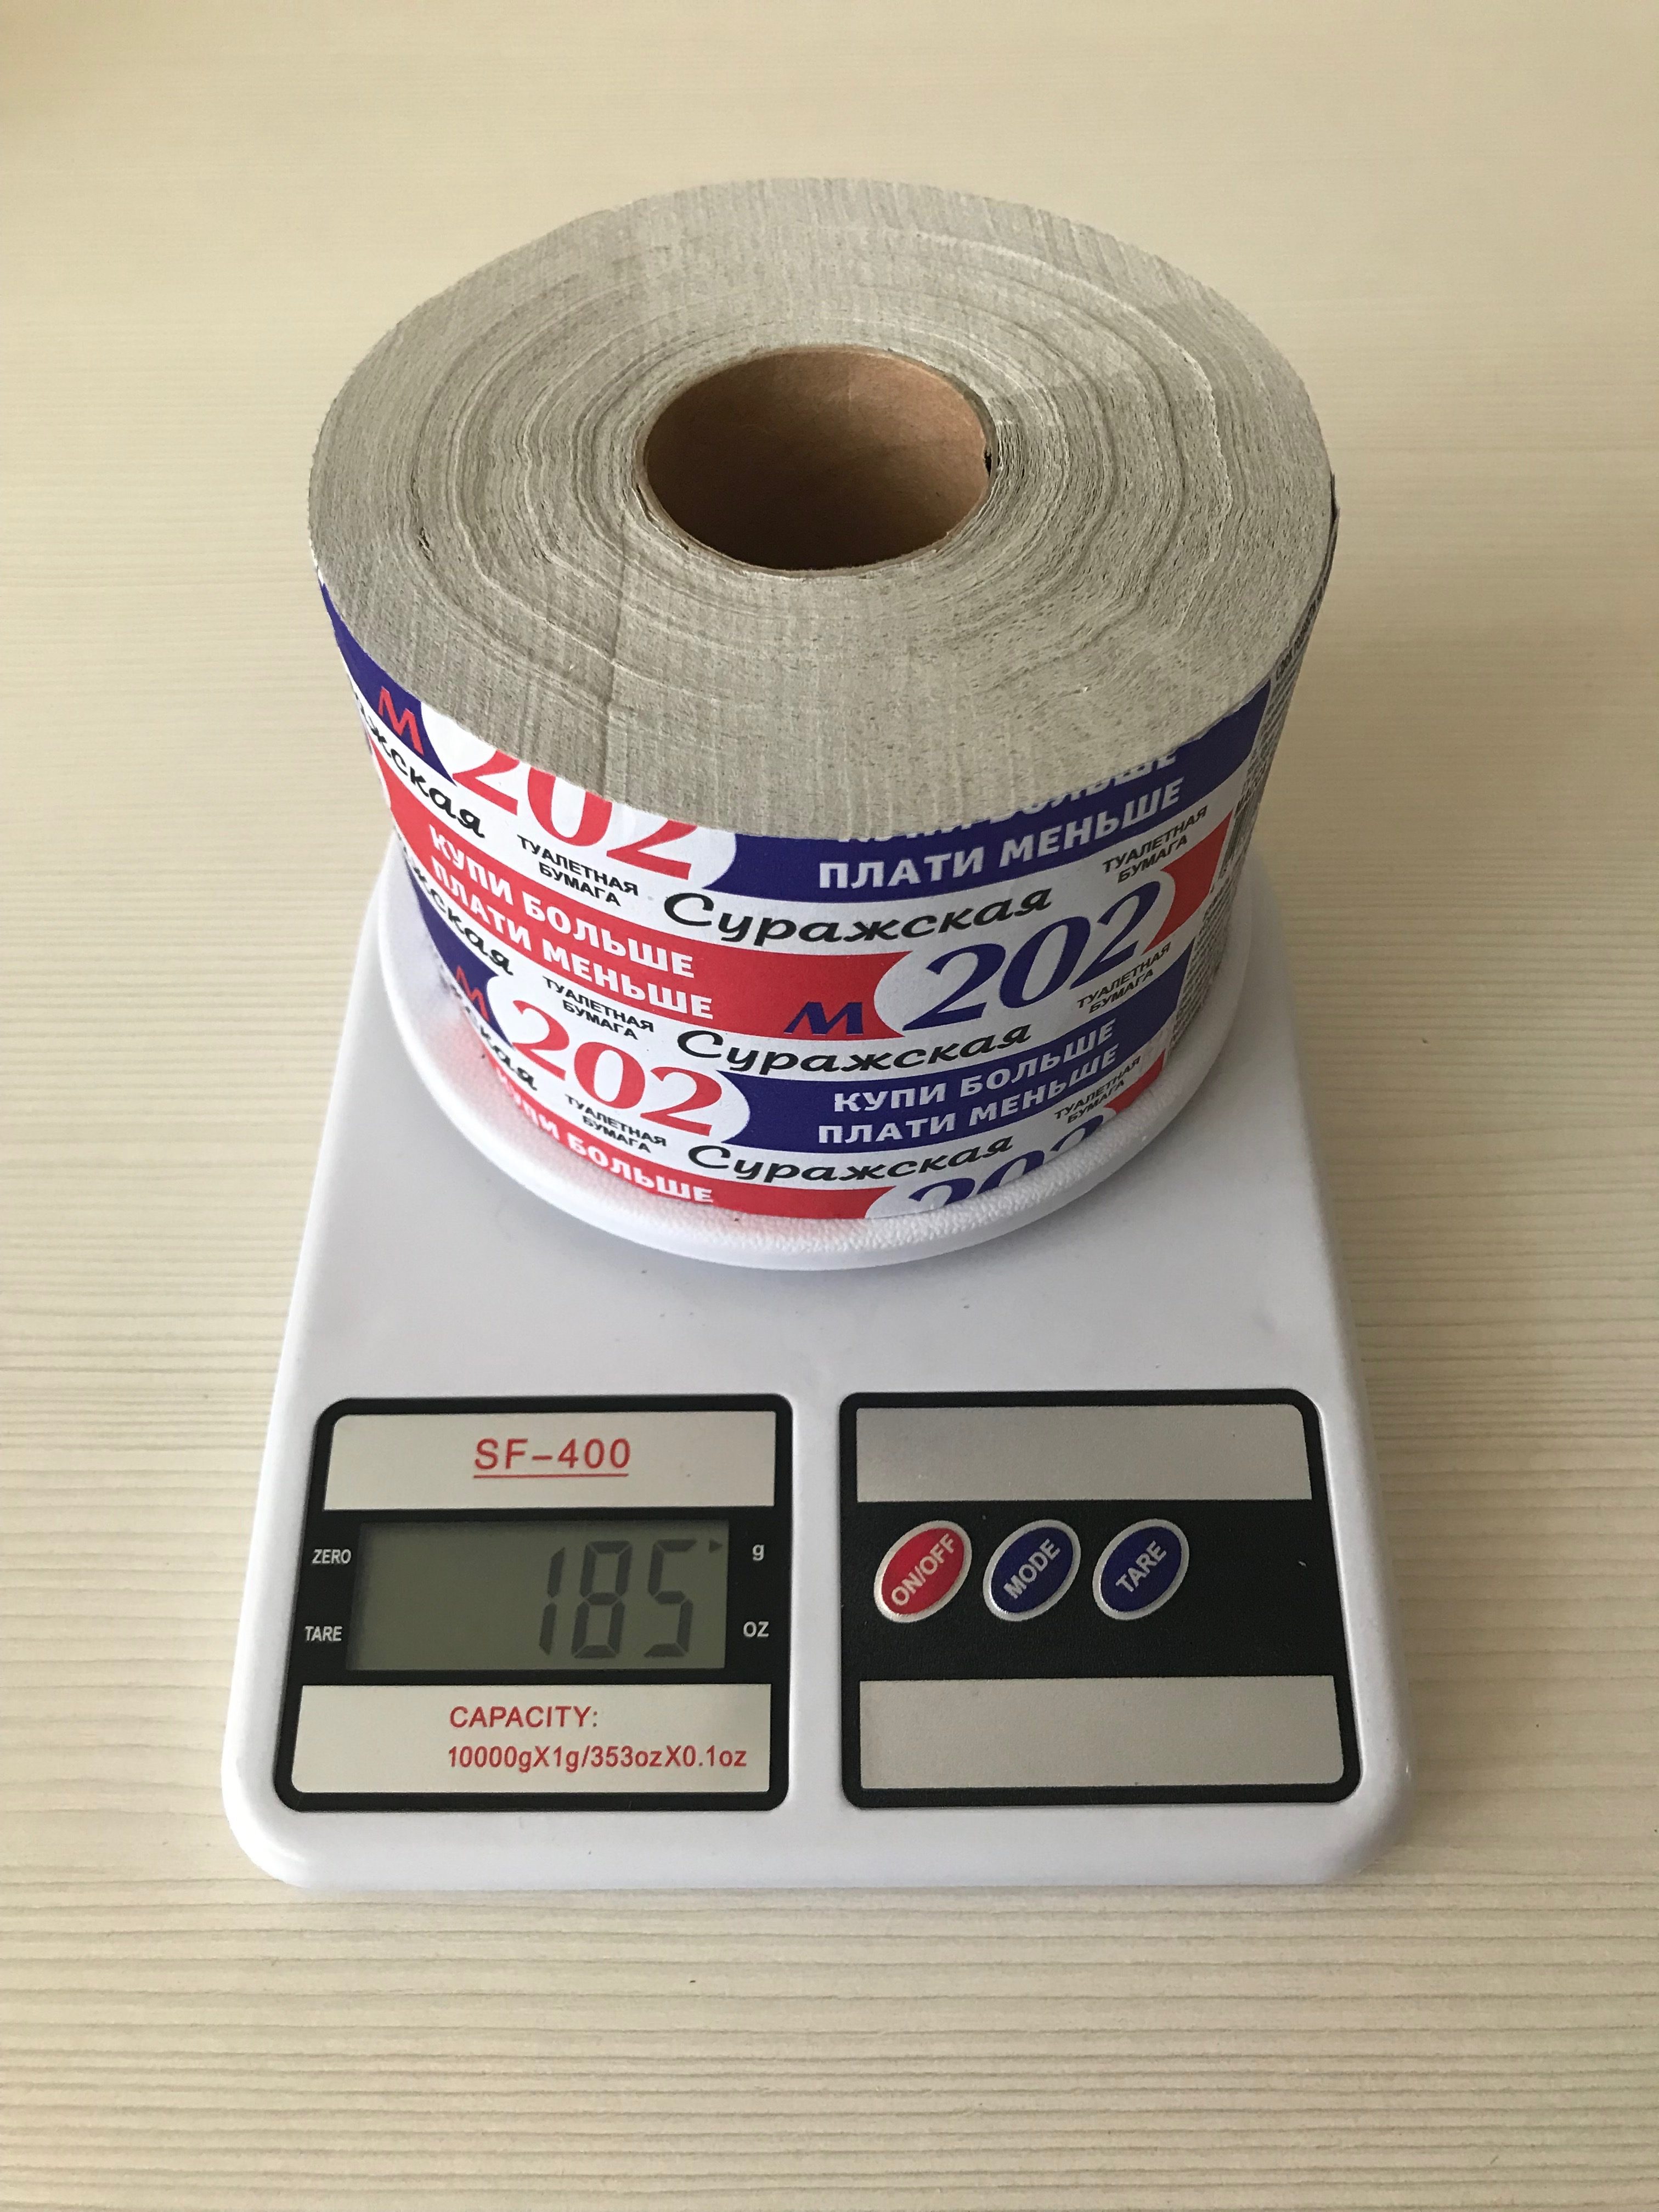 tualetinio popieriaus ritinėlio svoris